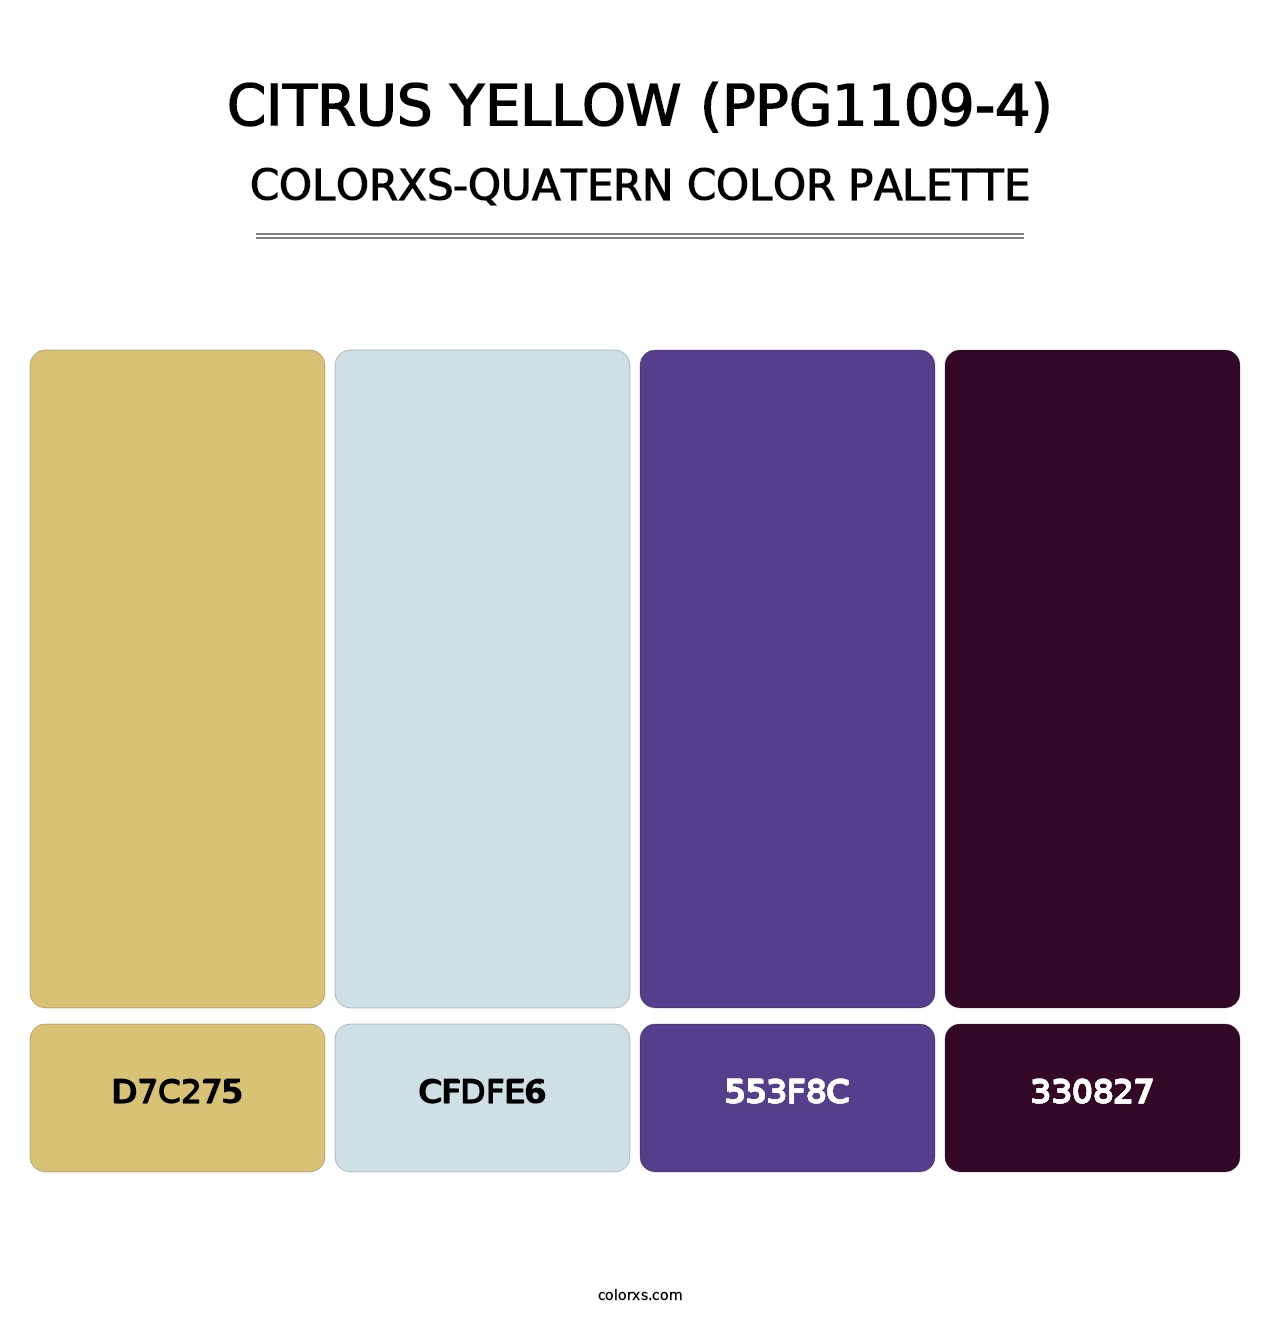 Citrus Yellow (PPG1109-4) - Colorxs Quatern Palette